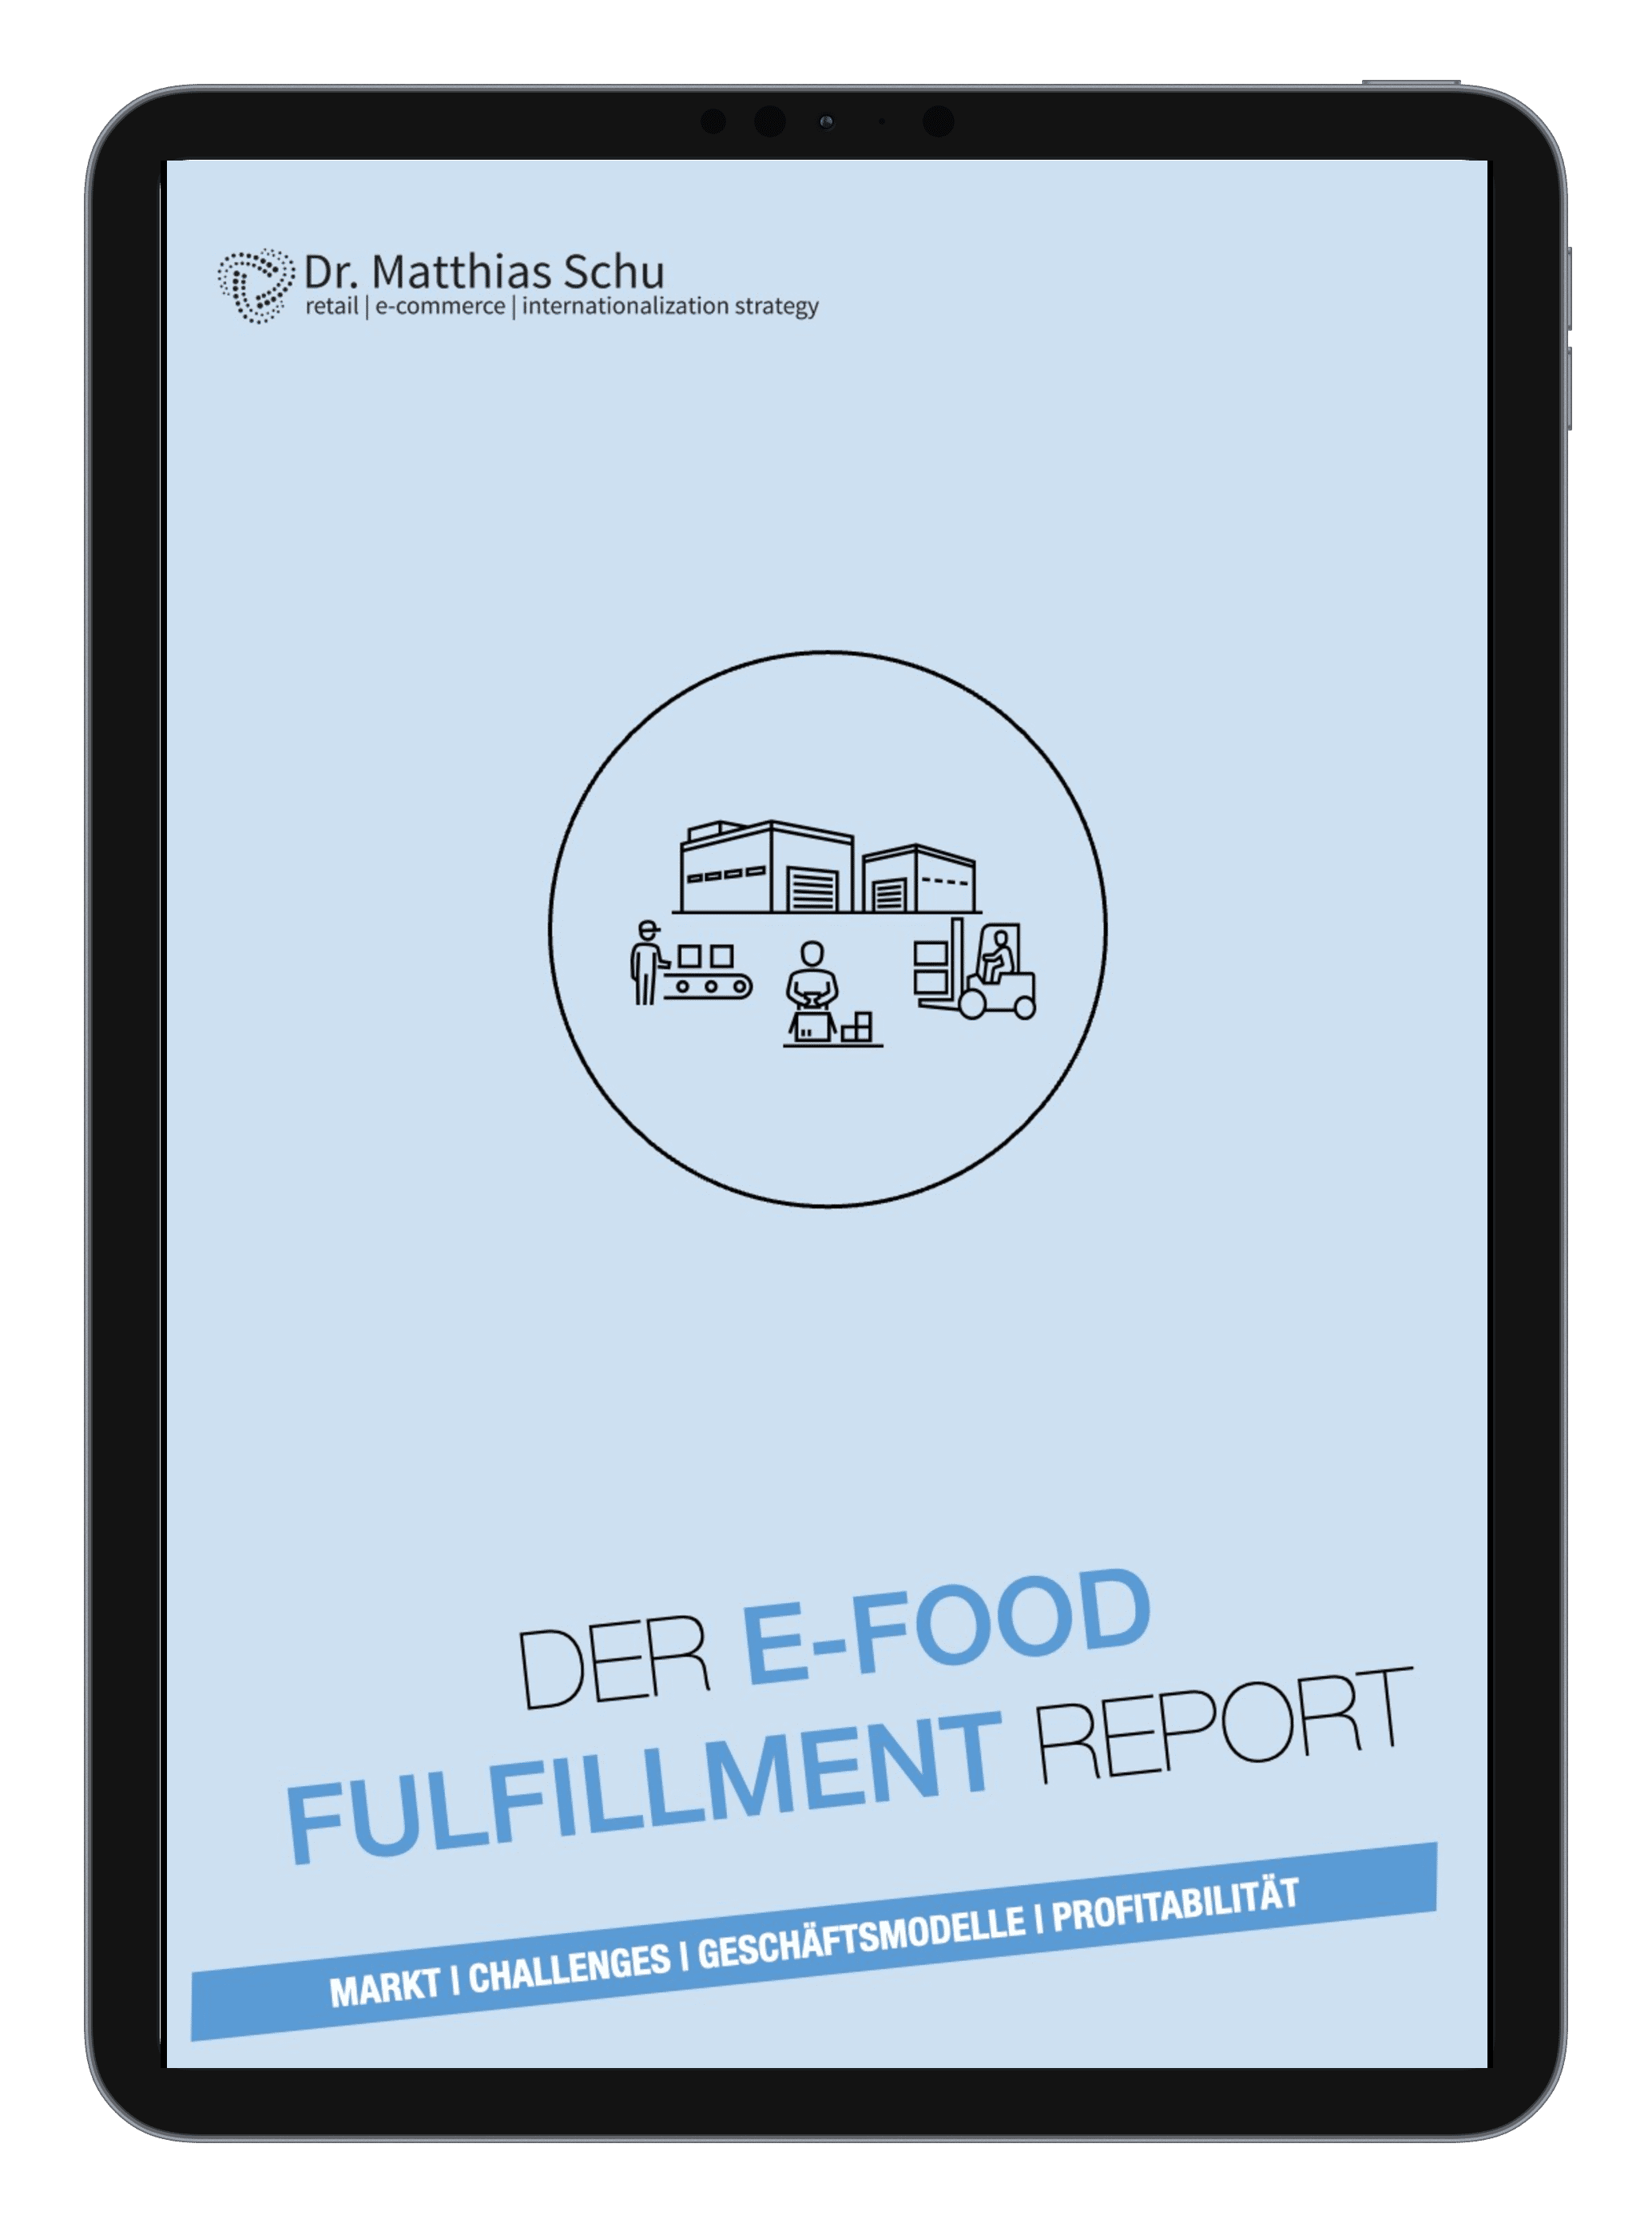 Der E-Food Fulfillment Report: Markt | Challenges | Geschäftsmodelle | Profitabilität